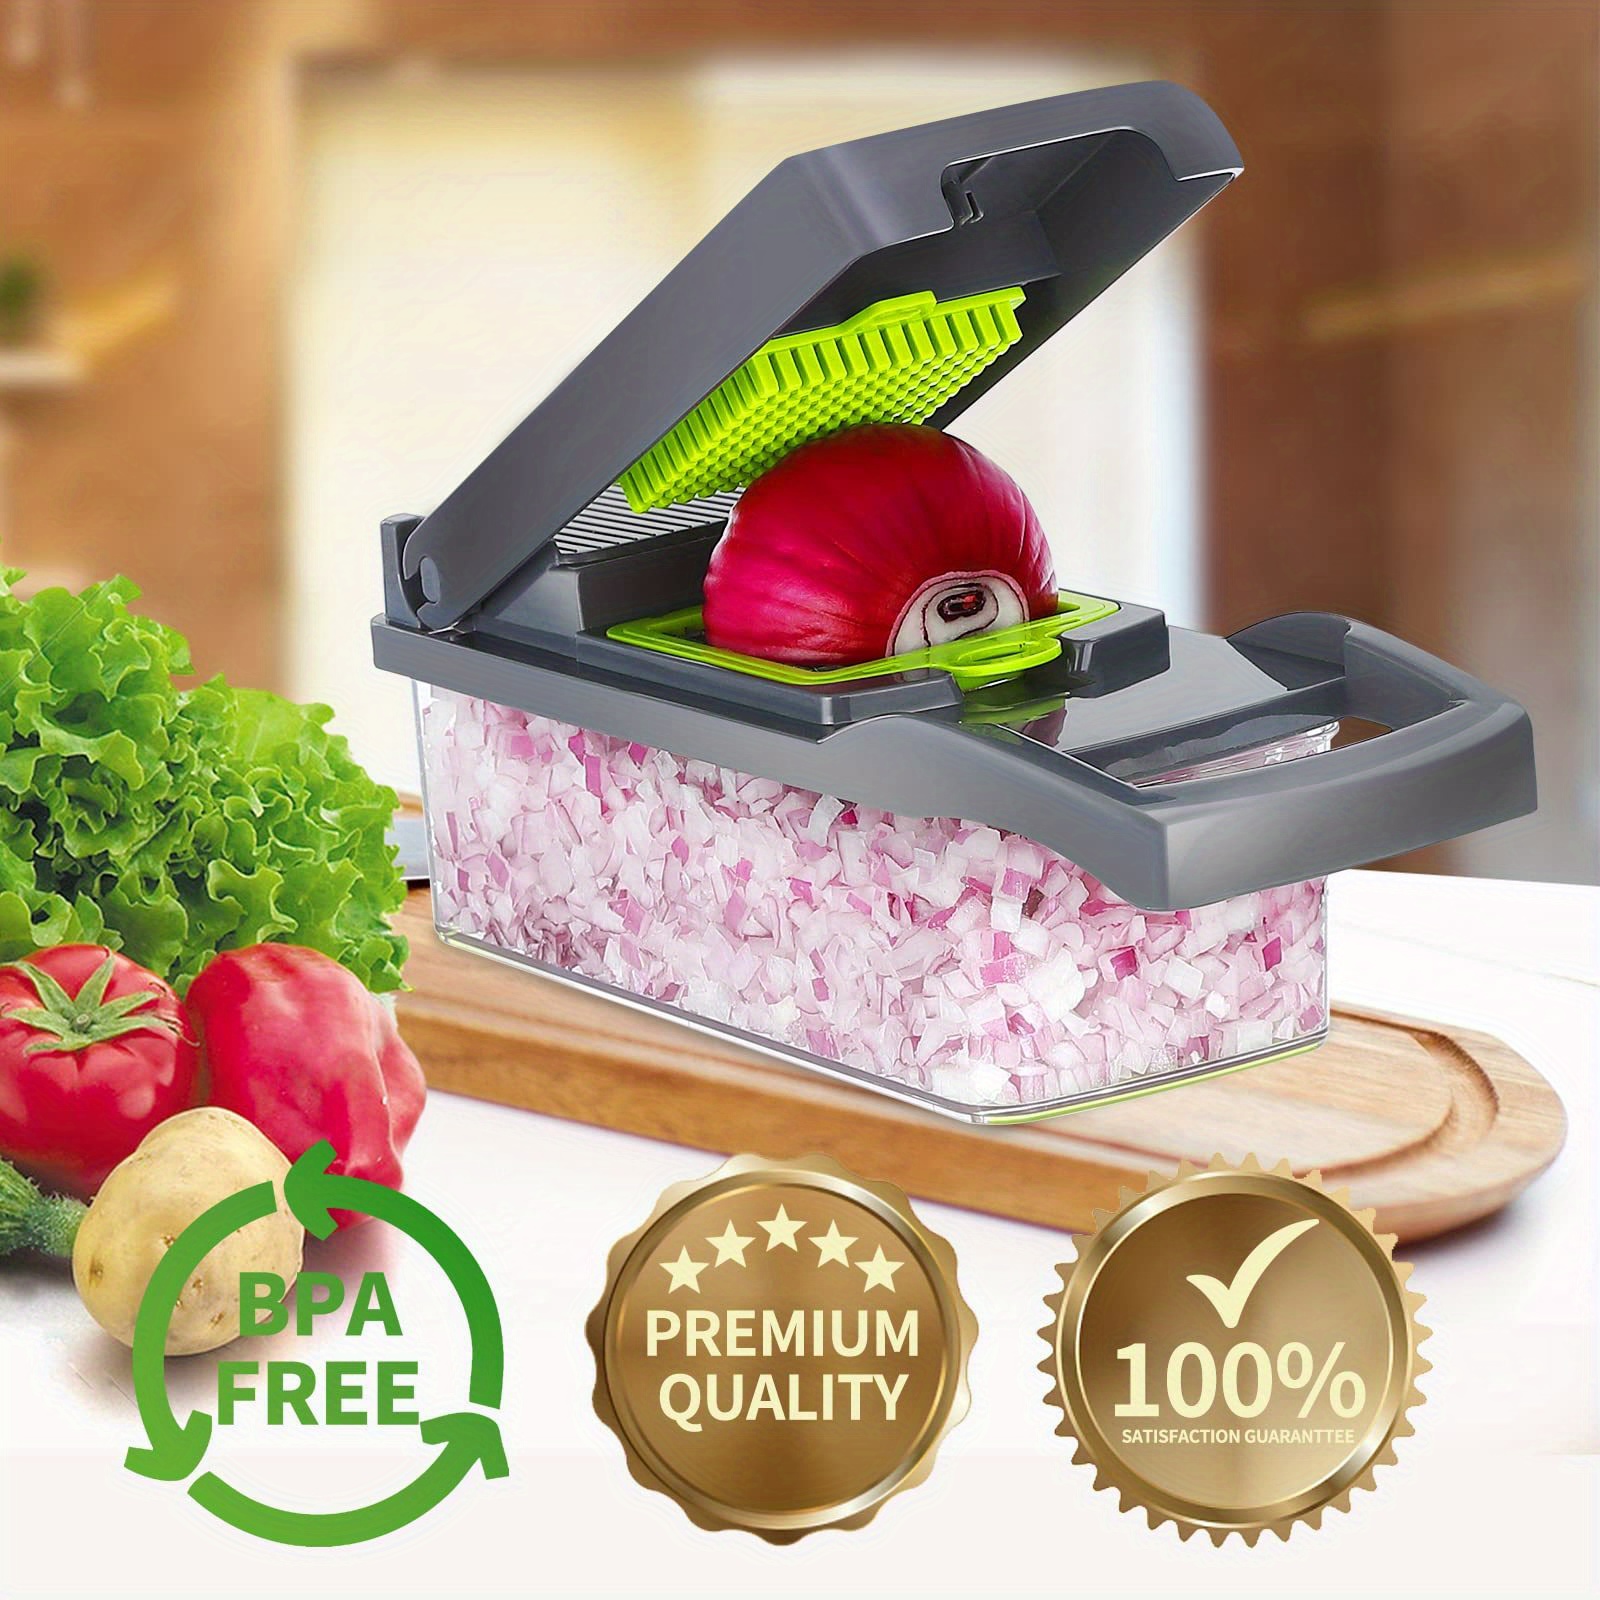 ENDLILI Vegetable Chopper, Pro Onion Chopper,15 in 1 Multifunctional Food  Chopper-Adjustable Vegetable Slicer-Kitchen Gift Gadget Veggie Slicer for